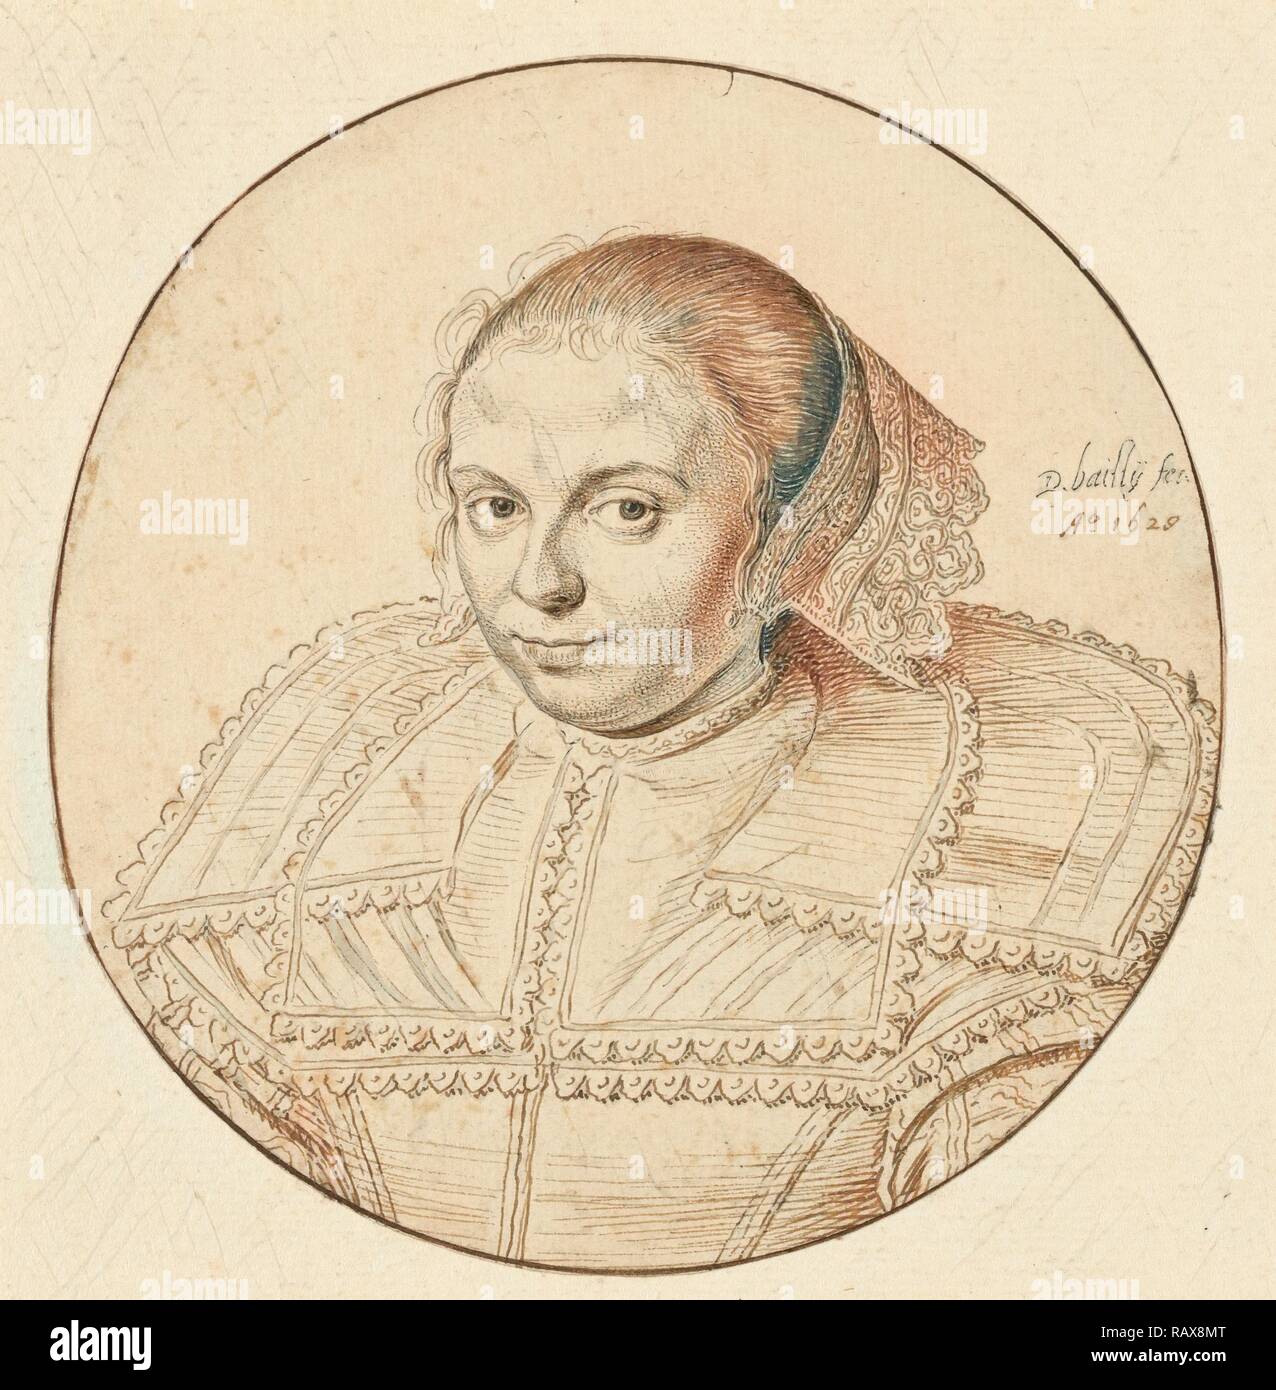 Portrait d'une femme, David Bailly, Néerlandais, 1584 - 1657, France, Europe, 1629, plume et encre marron clair et foncé repensé Banque D'Images